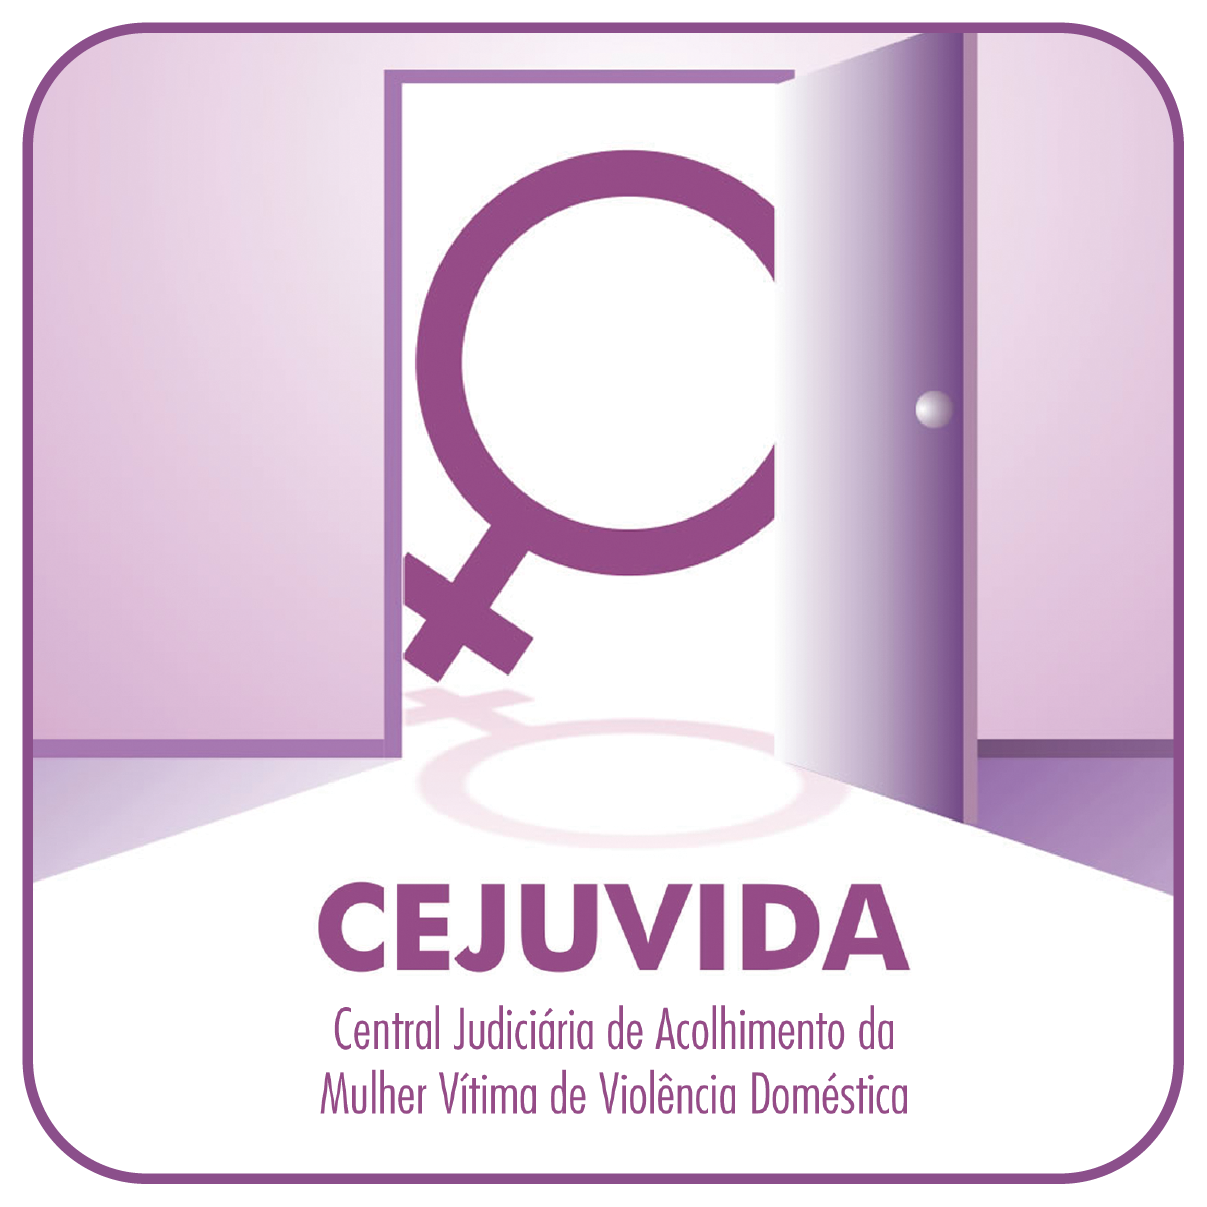 CEJUVIDA - Central Judiciária de Acolhimento da Mulher Vítima de Violência Doméstica